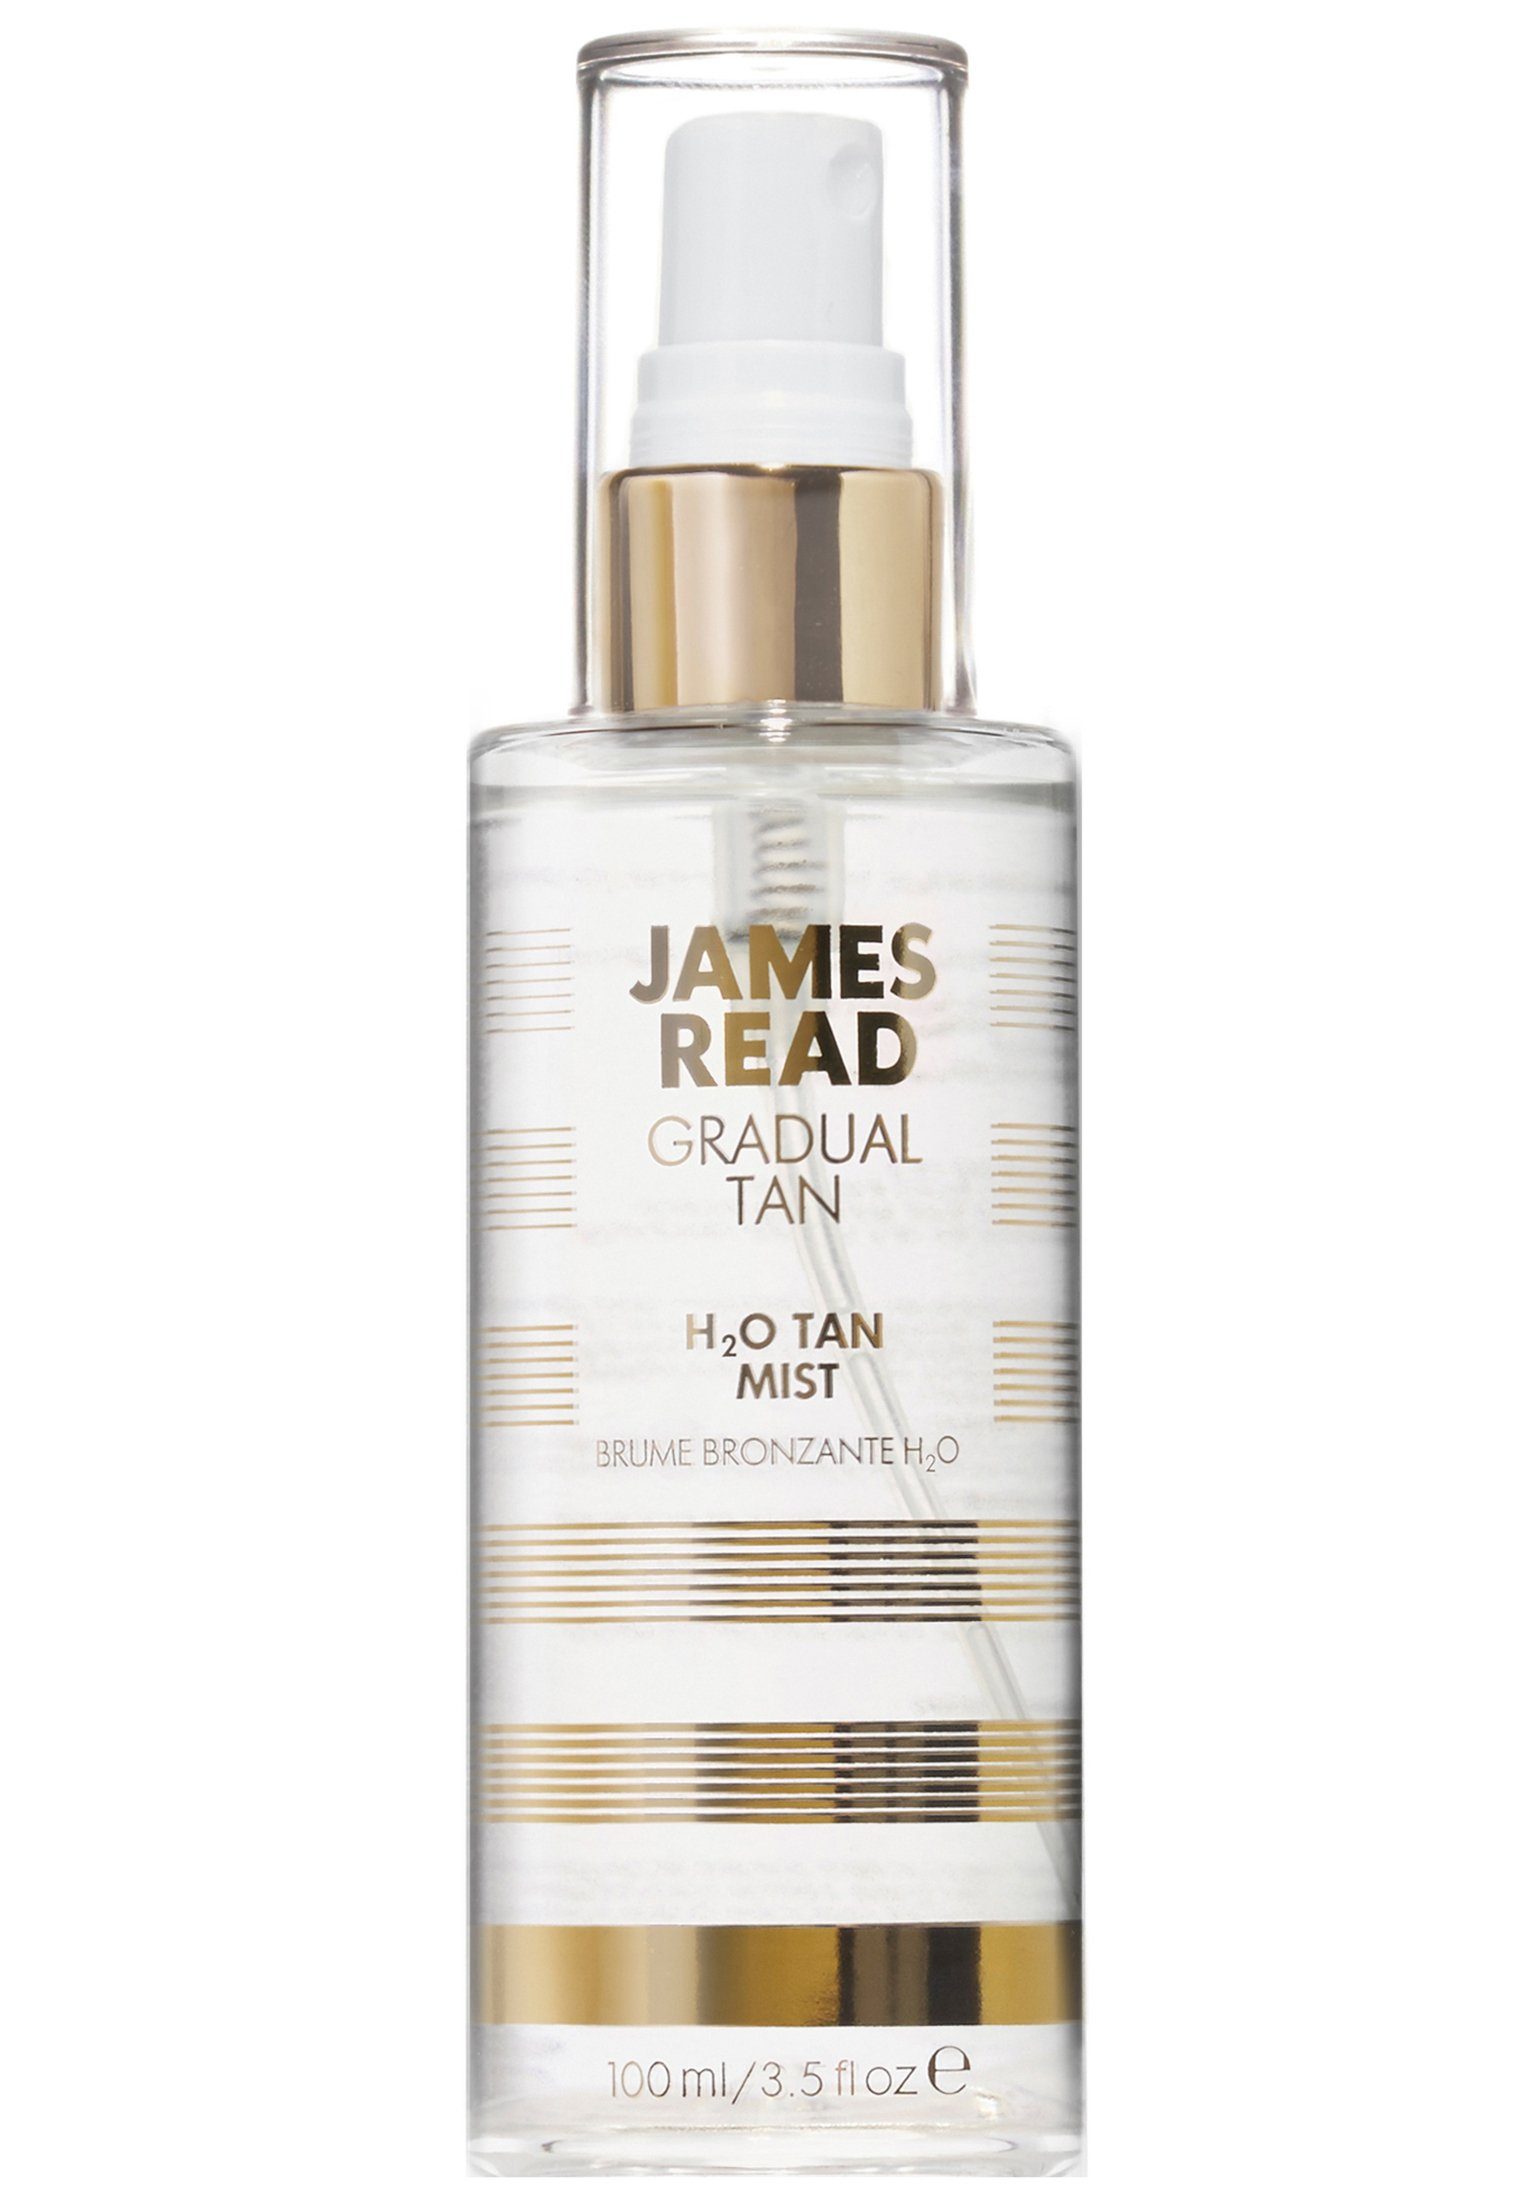 James Read Gesichts- und Körperspray mit Bräunungseffekt! H2O Mist Tan Gesichtsspray Gesichtsspray Read Erfrischendes, pflegendes James